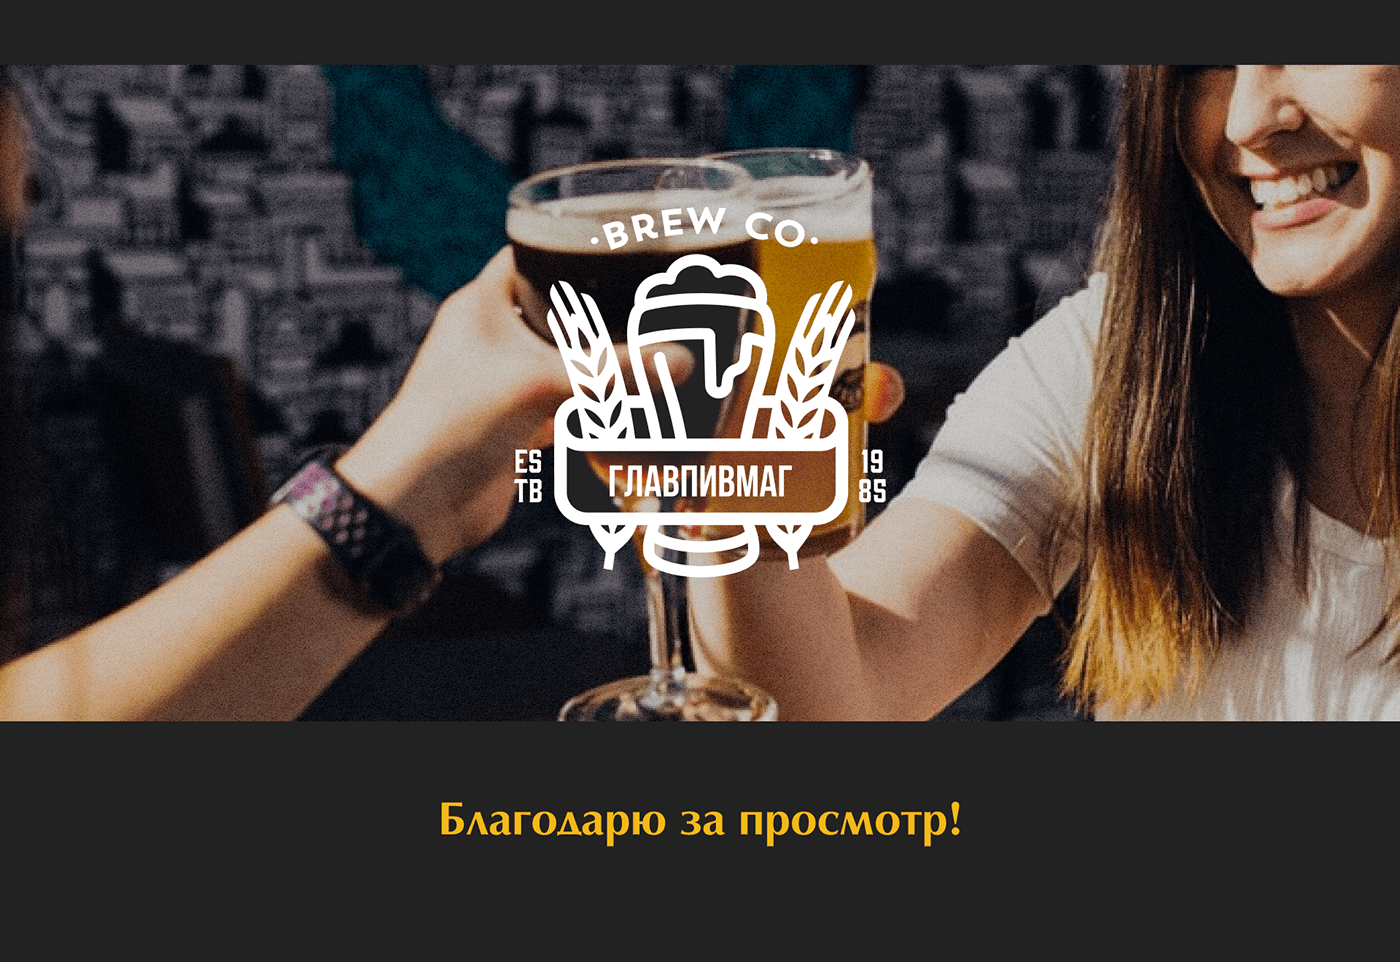 Website UI/UX Figma brewery craft beer beer alcohol SkillBox главпивмаг